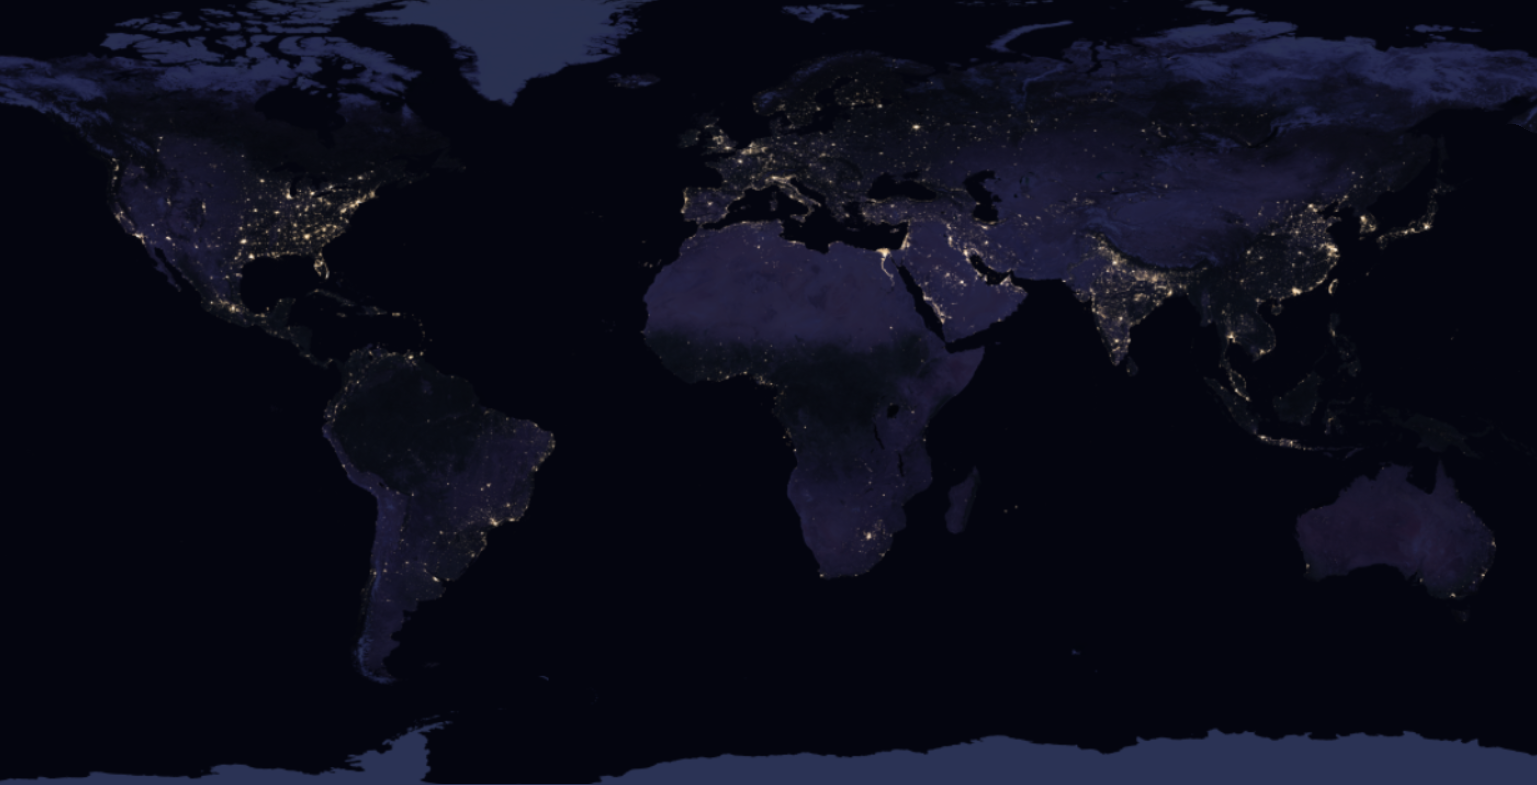 Earth at Night - Black Marble (NASA) - GIS Geography